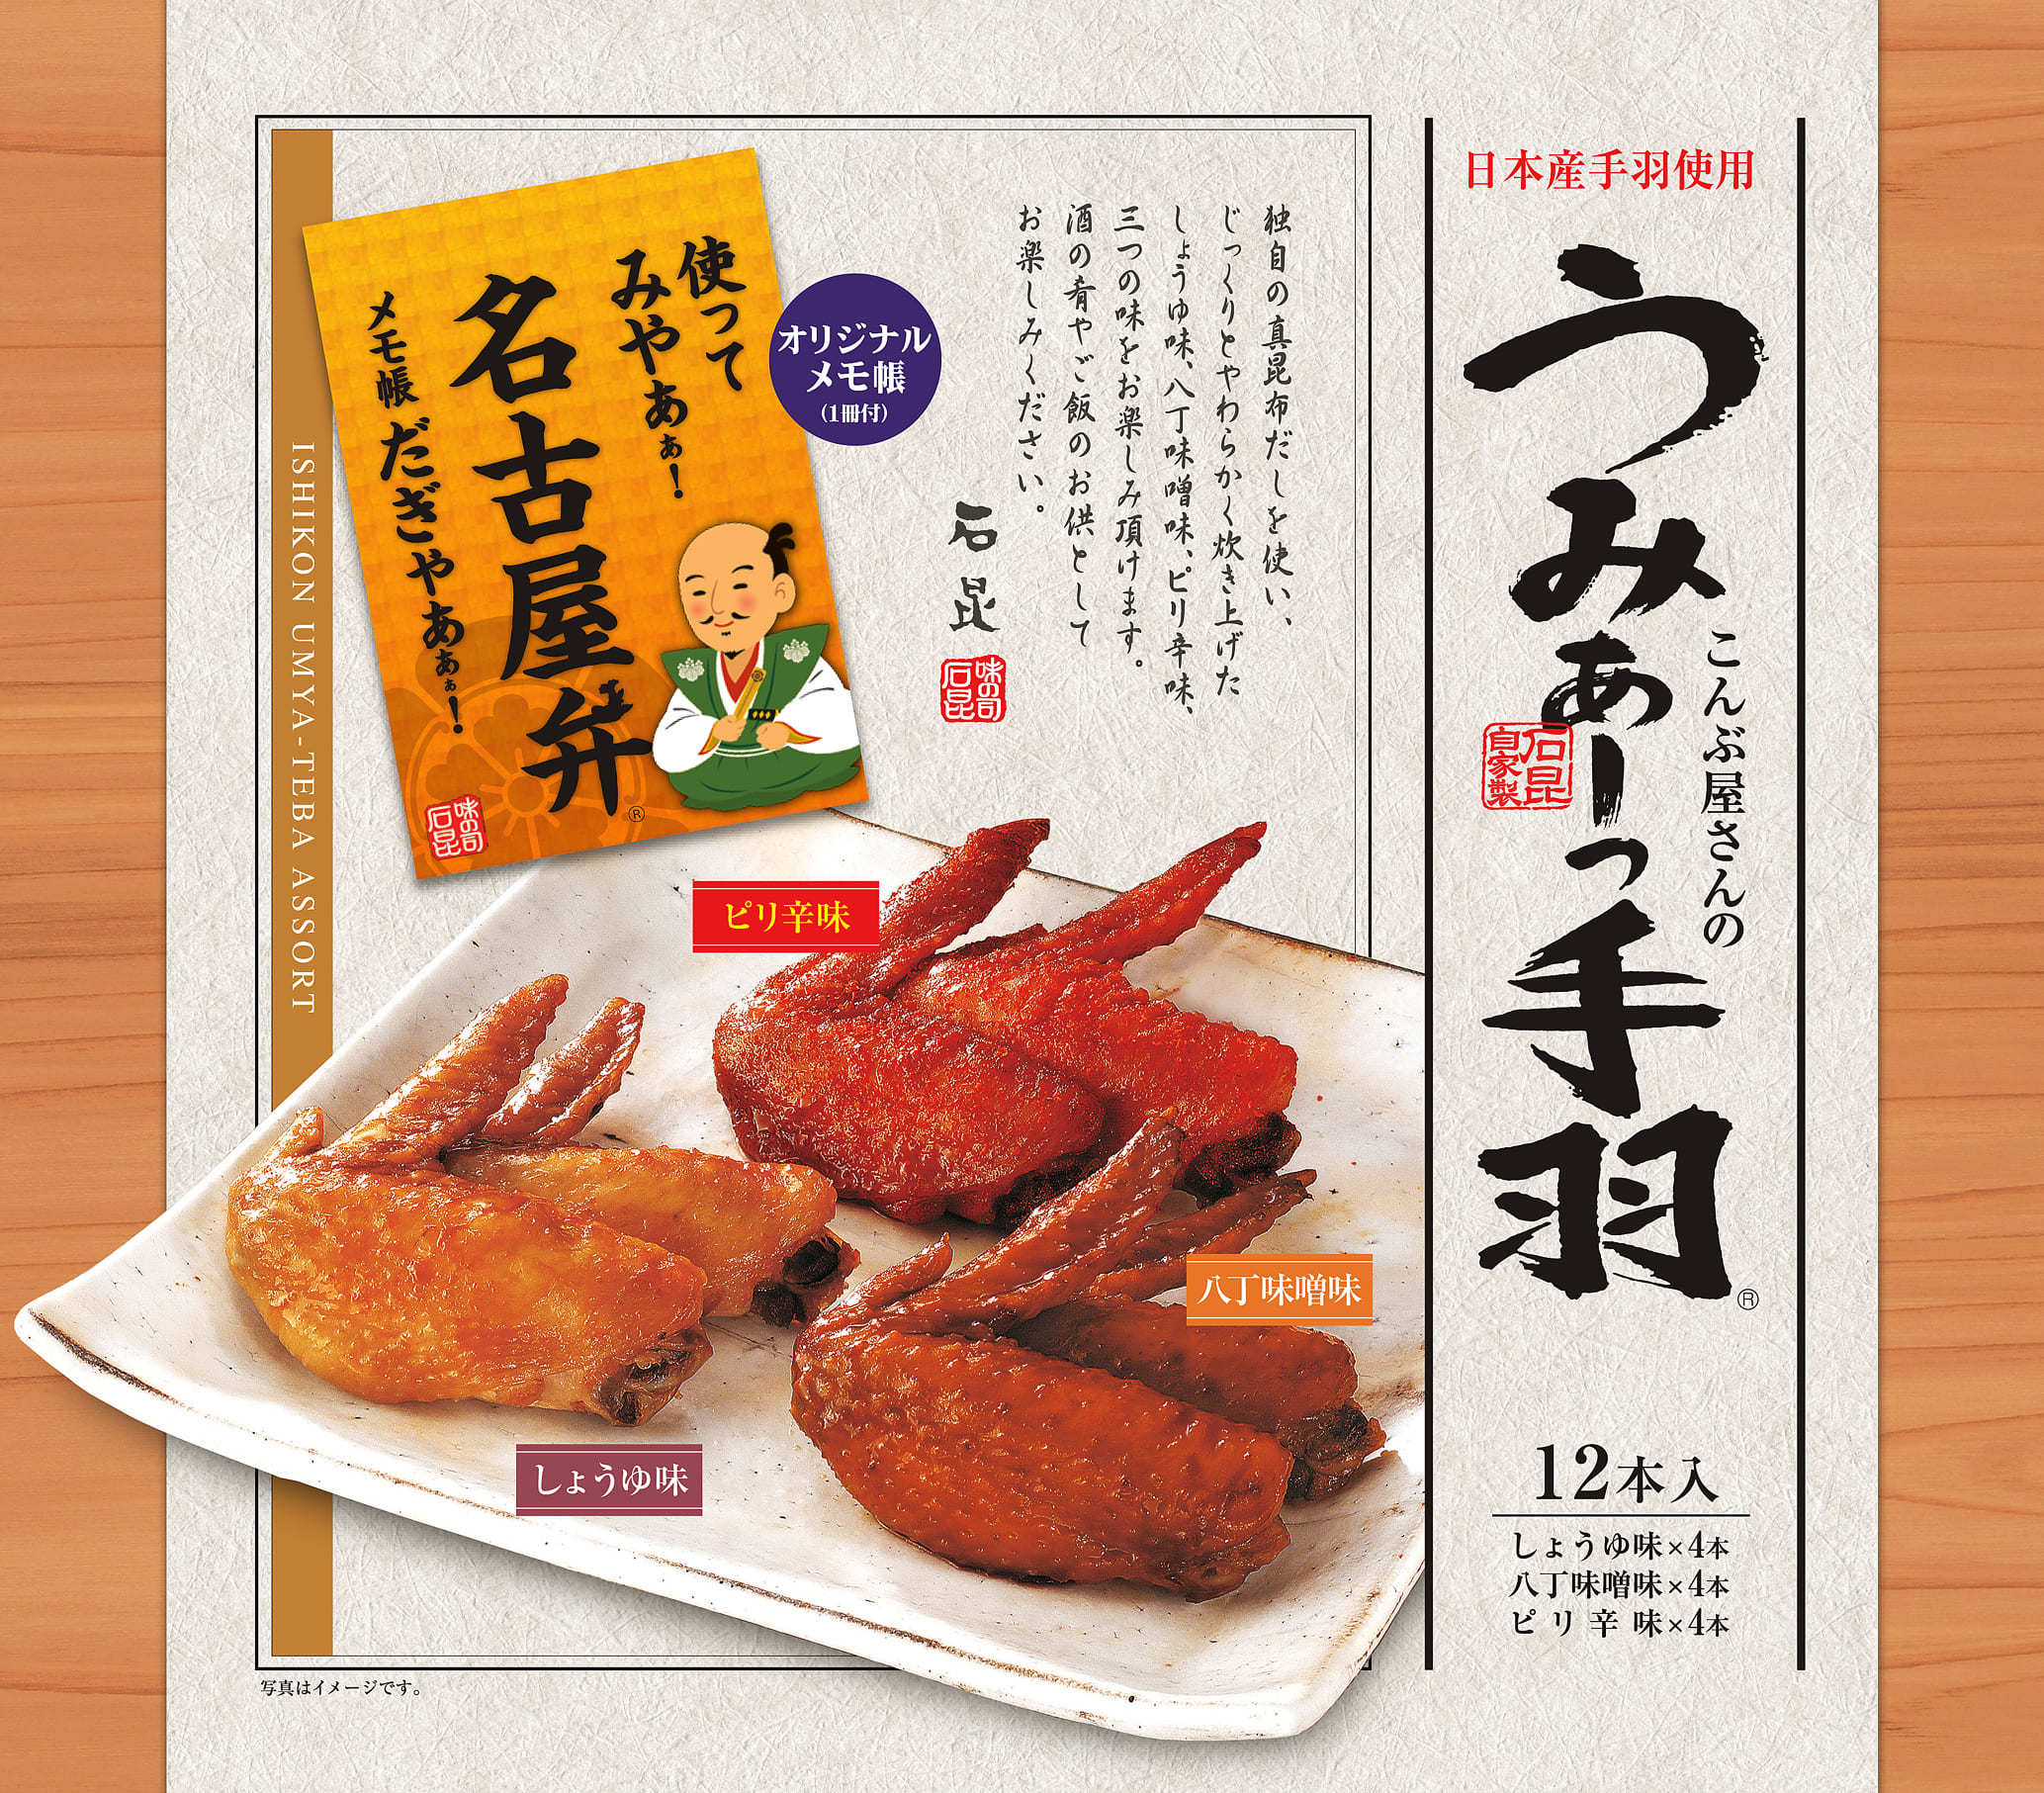 【テール・ド・トリュフ 東京】日本初トリュフ専門レストランのオンラインショップ開設